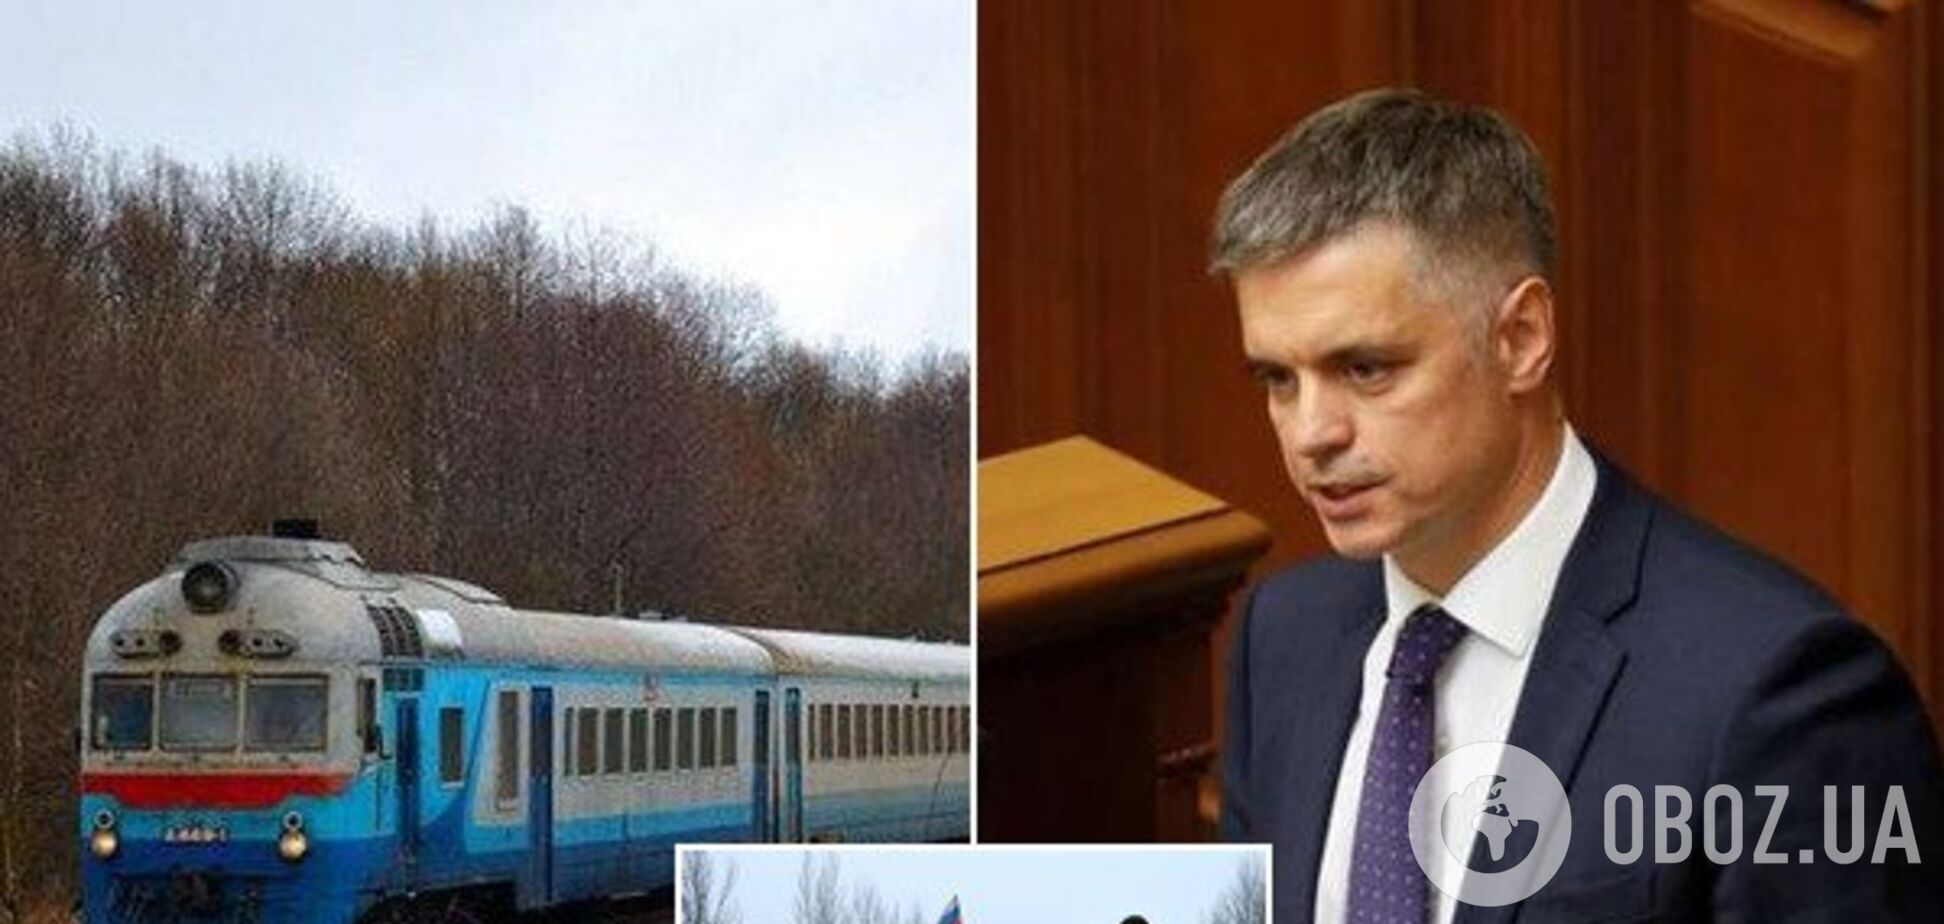 'Для комфорту': у Зеленського захотіли запустити потяги в 'ДНР' і 'ЛНР'